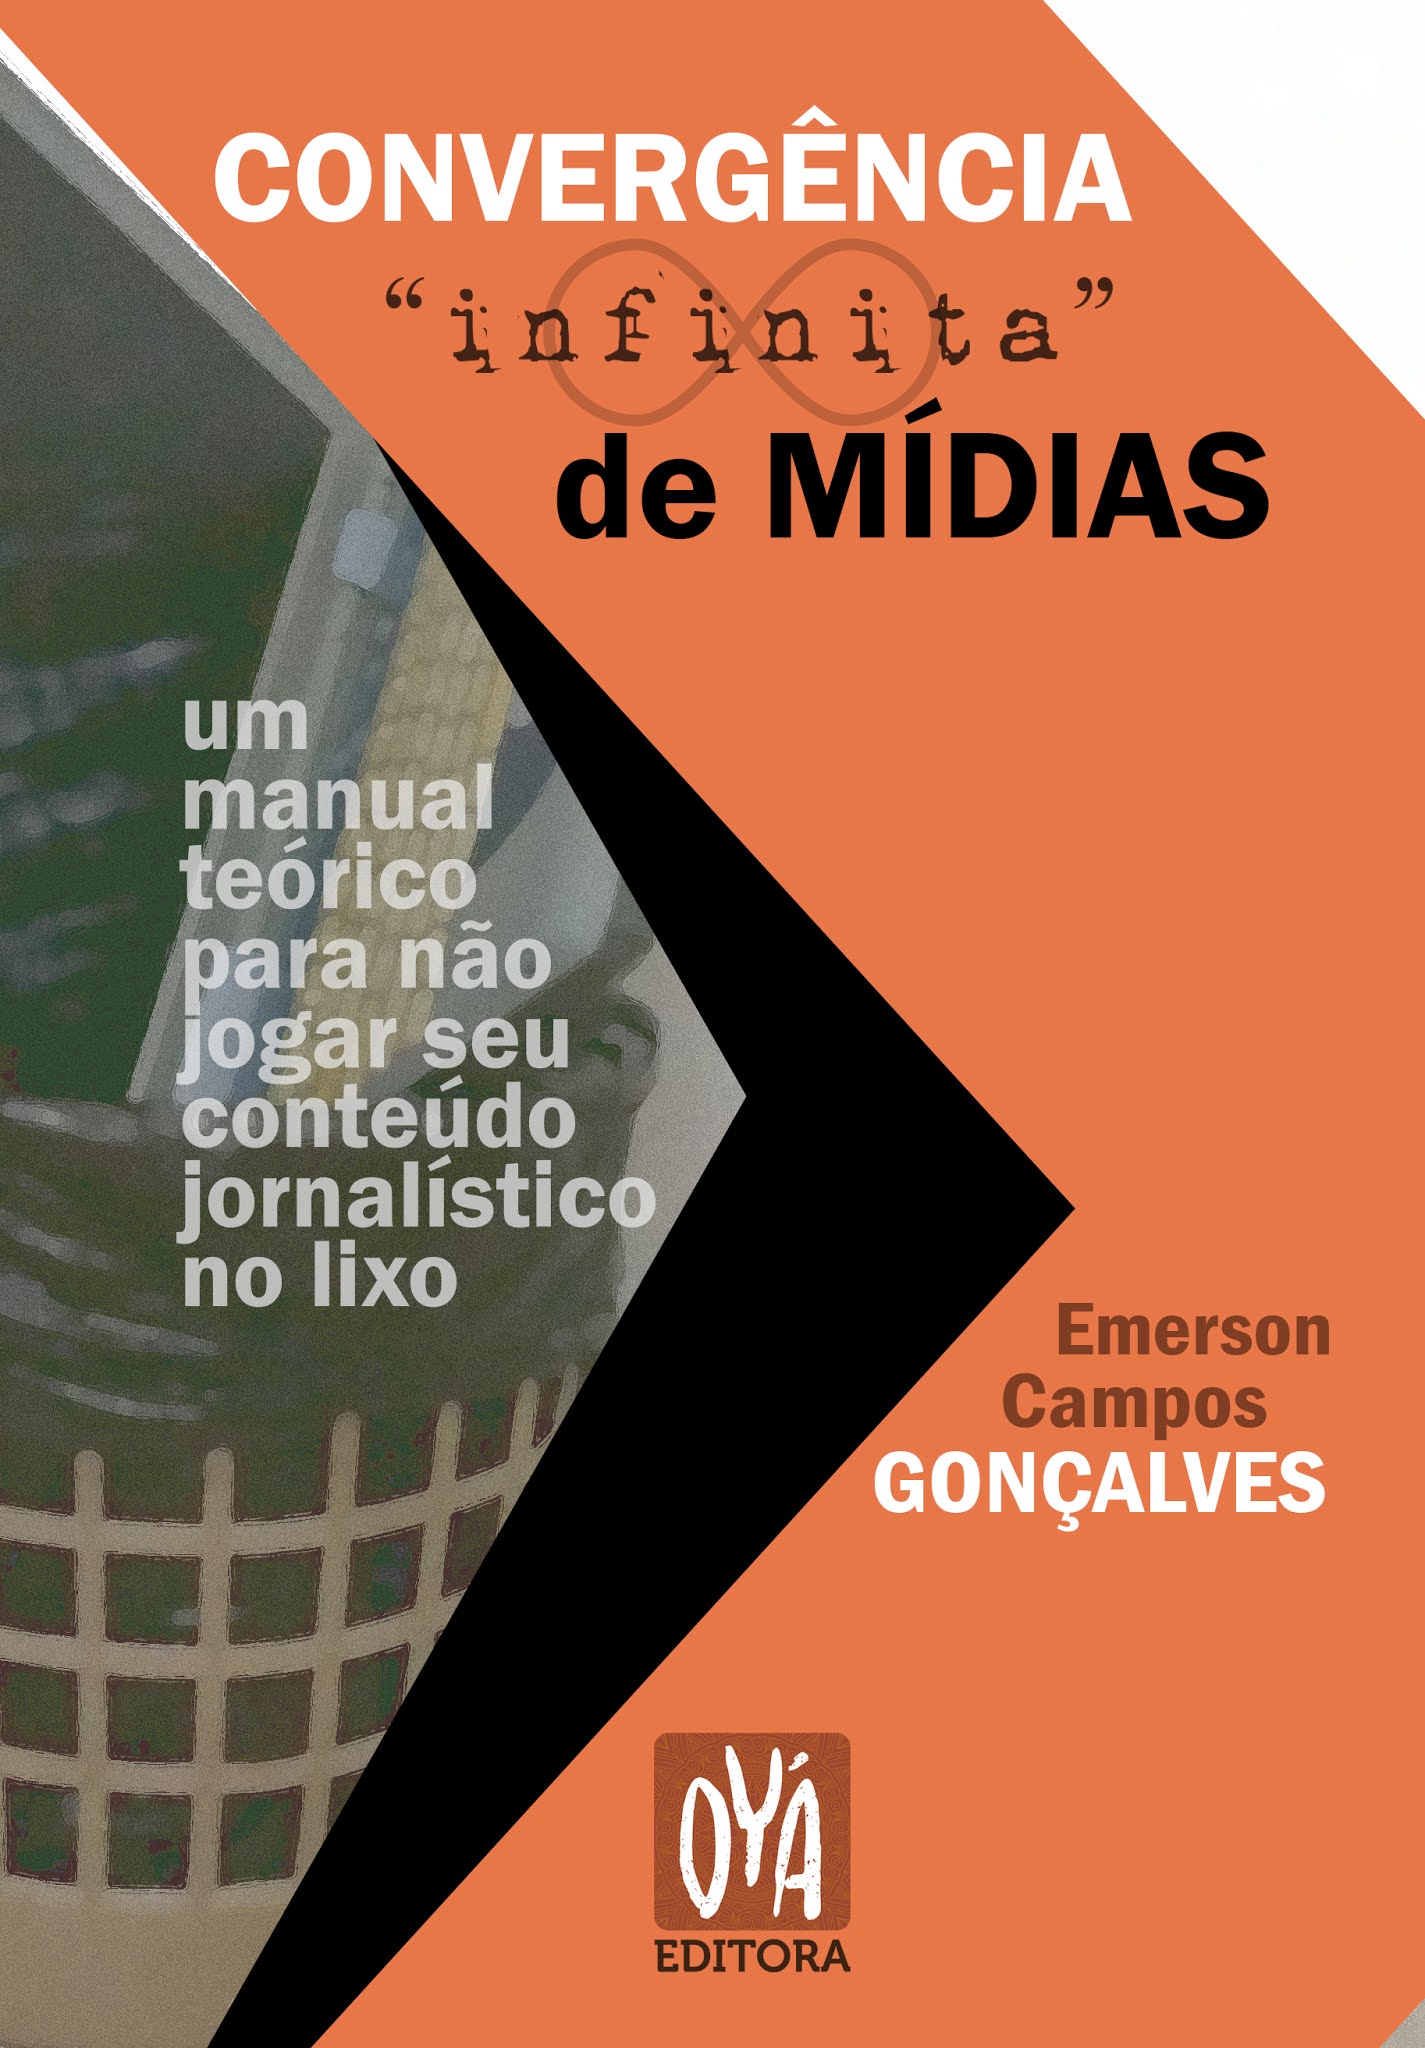 Convergência "infinita" de mídias: manual teórico...